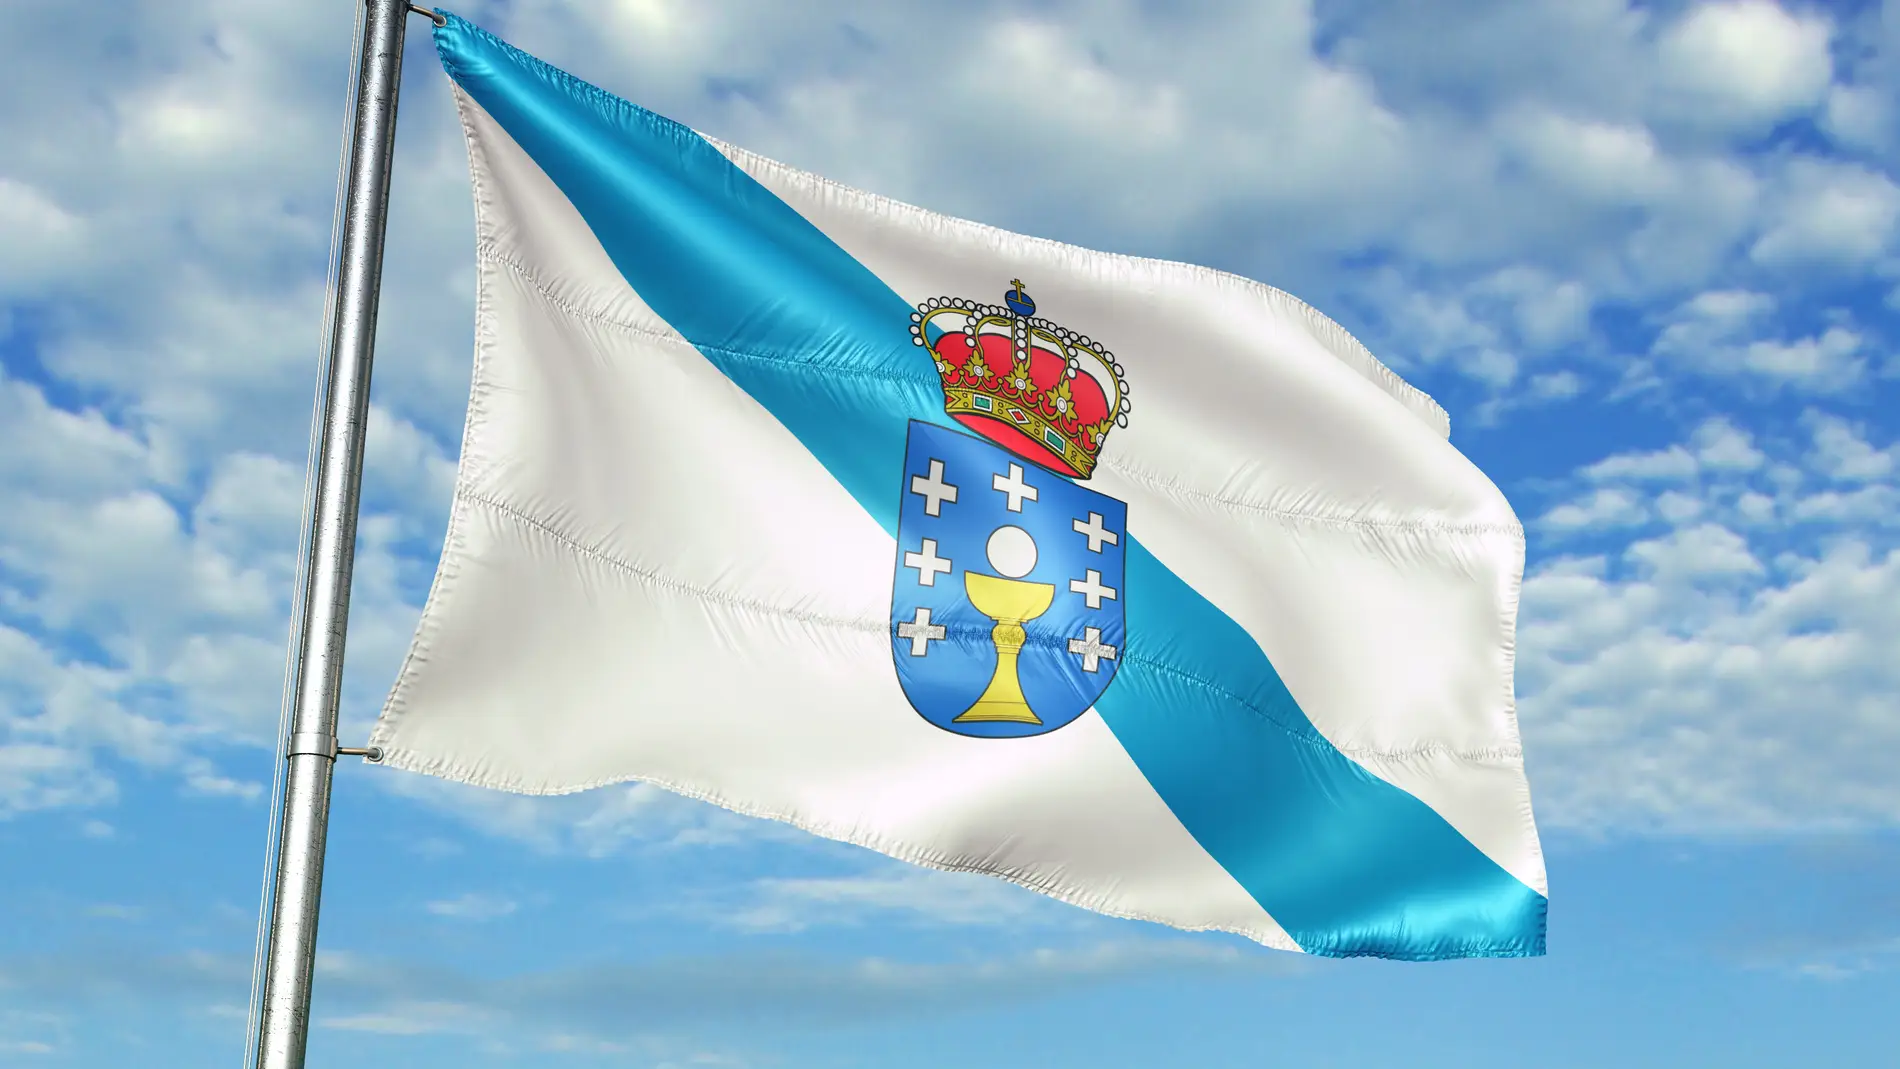 Blanca y azul: El origen de la bandera de Galicia